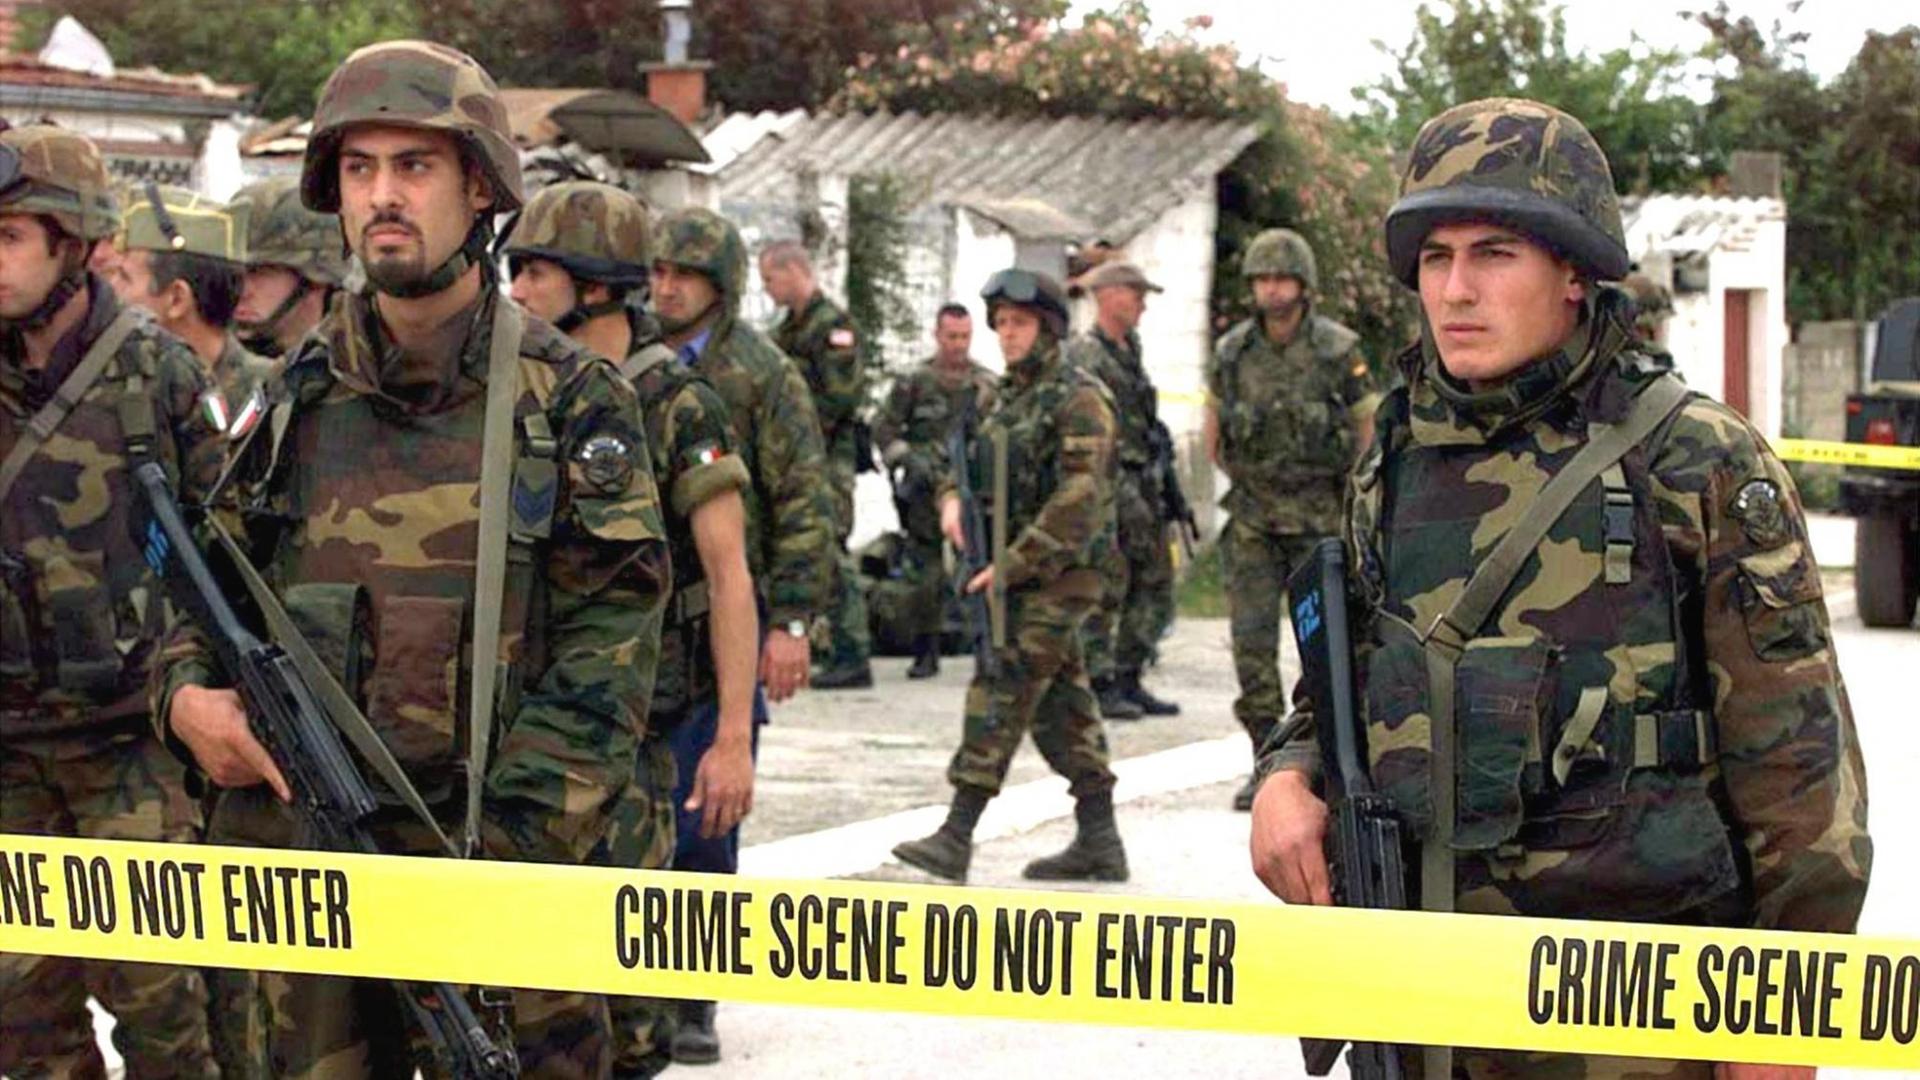 Auf der Suche nach Spuren von Kriegsverbrechen inspizieren US-Soldaten am 24.6.1999 ein abgesperrtes Gelände in Dakovica im Kosovo. Die mit unvorstellbarer Brutalität begangenen Greueltaten der serbischen Soldateska im Kosovo kommen immer mehr ans Tageslicht. Der stellvertretende Chefankläger des UN-Tribunals in Den Haag, Graham Blewitt, sagte am 23.6.1999, er rechne damit, daß schon bald alle vom Tribunal als vorrangig bezeichneten Orte von Massakern und anderen Verbrechen untersucht werden. Die Ermittlungen internationaler Experten vor Ort kämen gut voran. Der britische Außenminister Robin Cook, der am 23.6. ein Massengrab bei Velika Krusa in Augenschein nahm, sagte: «"Das hier ist entsetzlich. Ich bin tief bewegt und erschüttert."